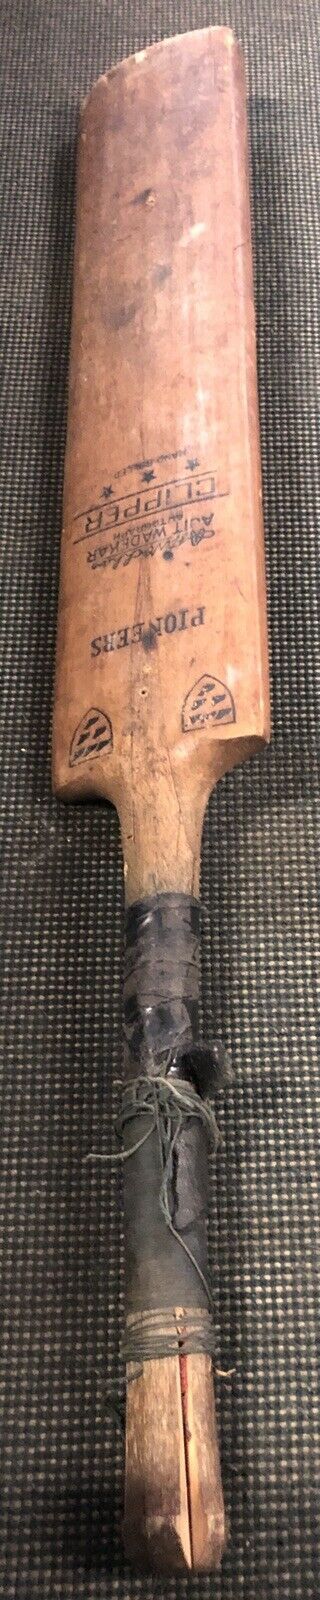 Antique Vintage Pioneers Short Handle Cricket Bat